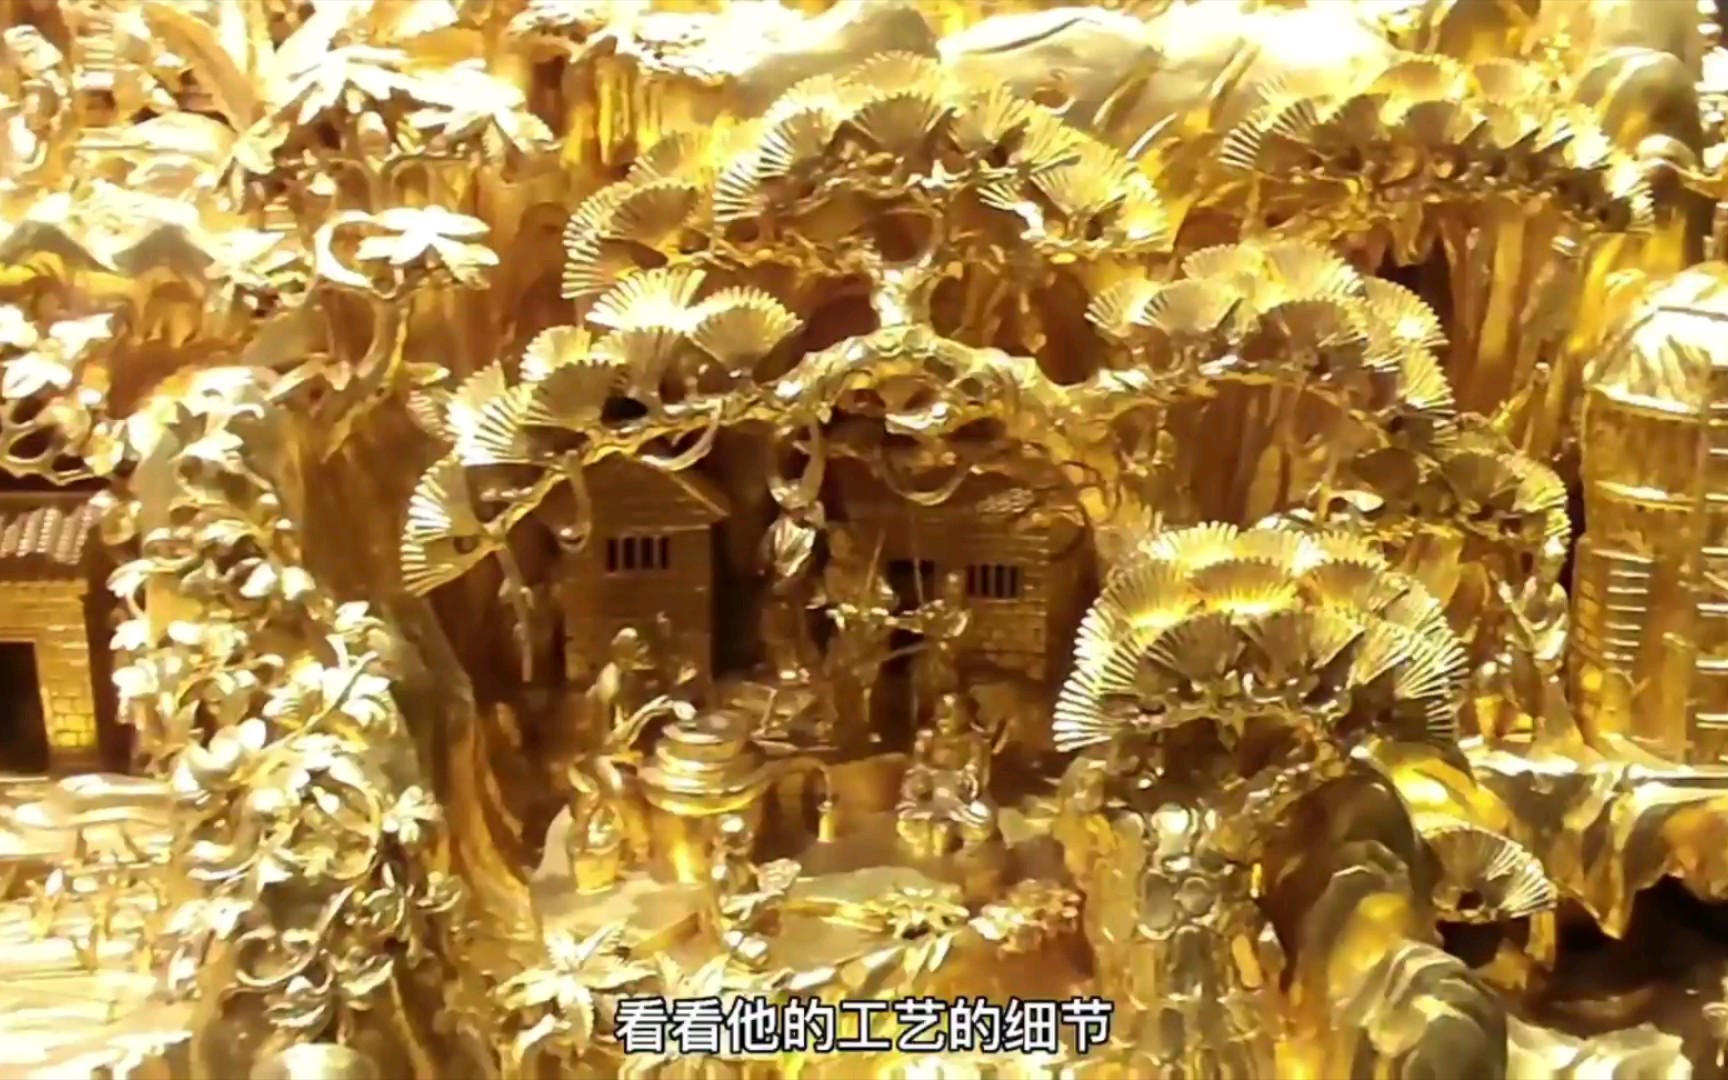 叹为观止 赌王何鸿燊的惊天收藏 200斤纯黄金打造的宝船都算不上最好的收藏